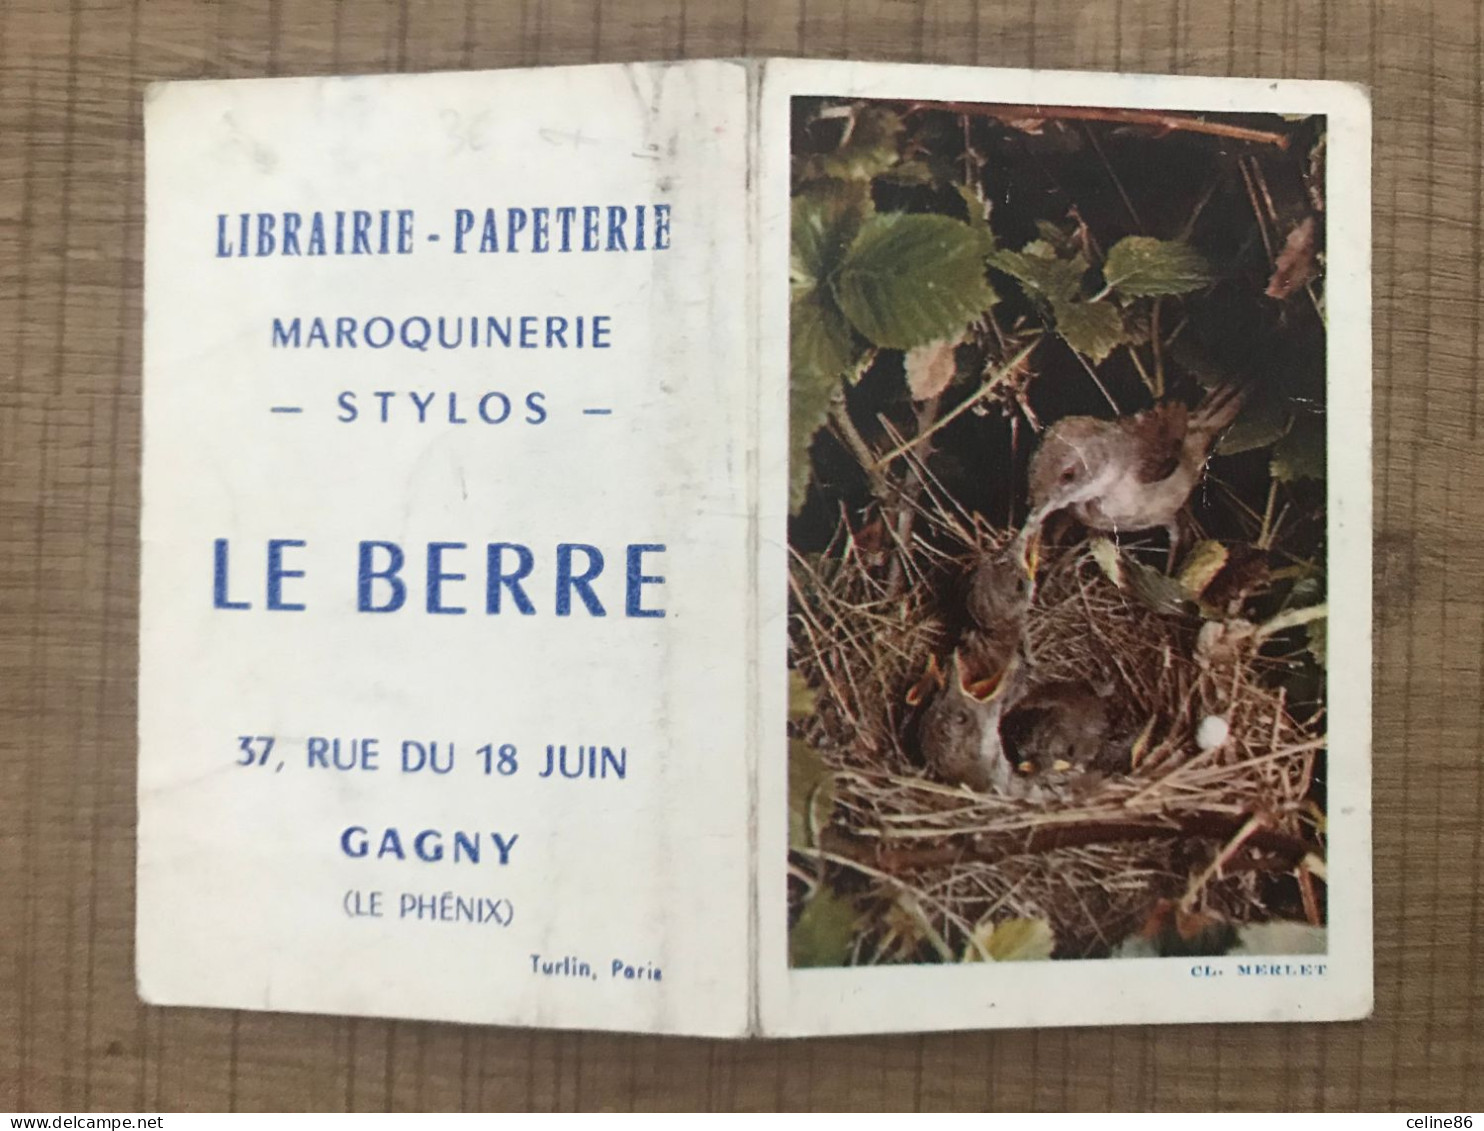 1964 MERLET Librairie Papeterie LE BERRE GAGNY - Klein Formaat: 1961-70